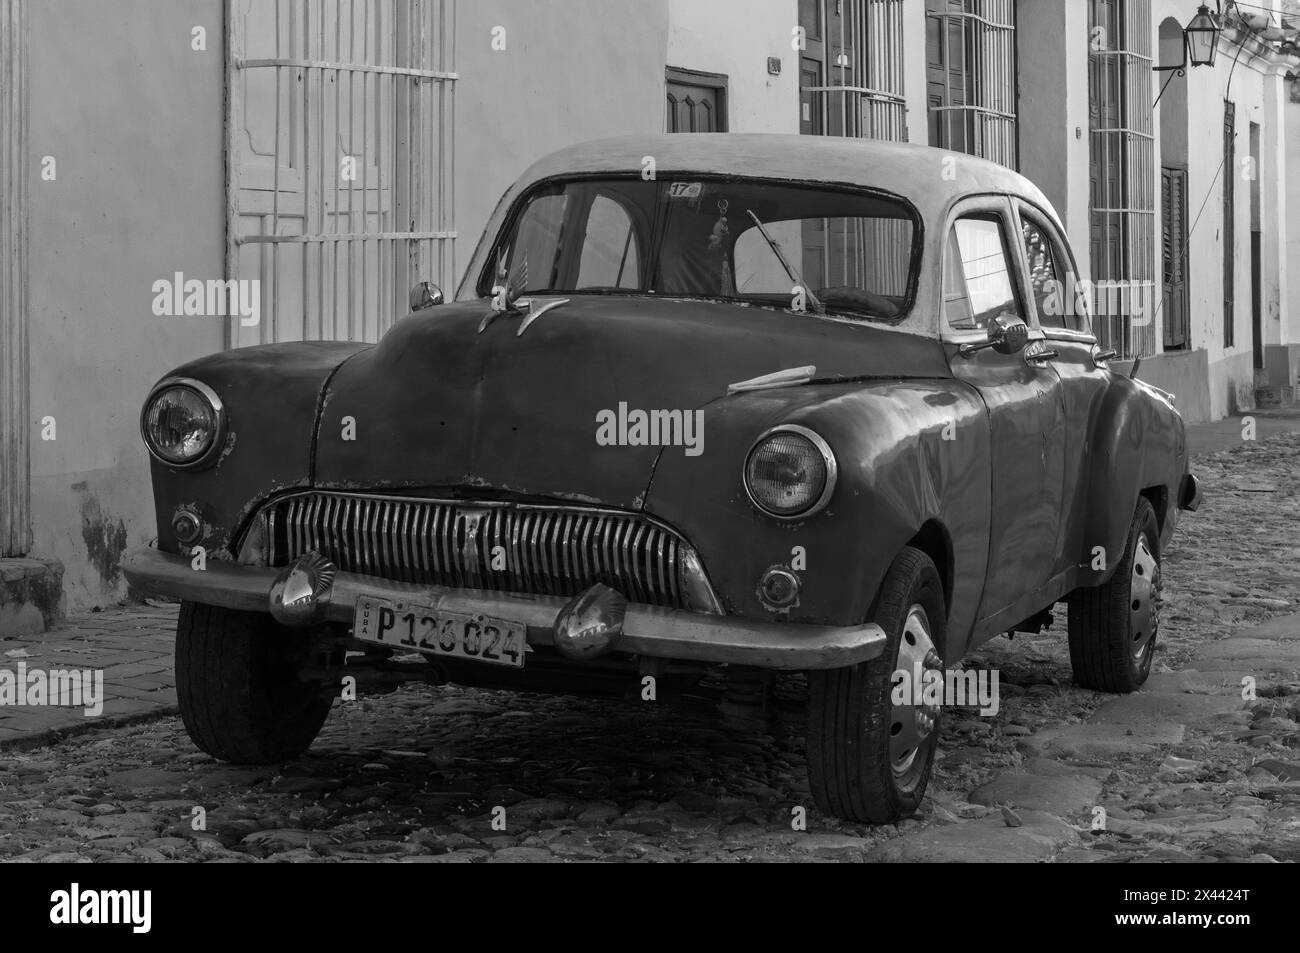 Une image infrarouge d'une ancienne voiture américaine restaurée dans les ruelles de la vieille ville, Trinidad, Cuba. Banque D'Images